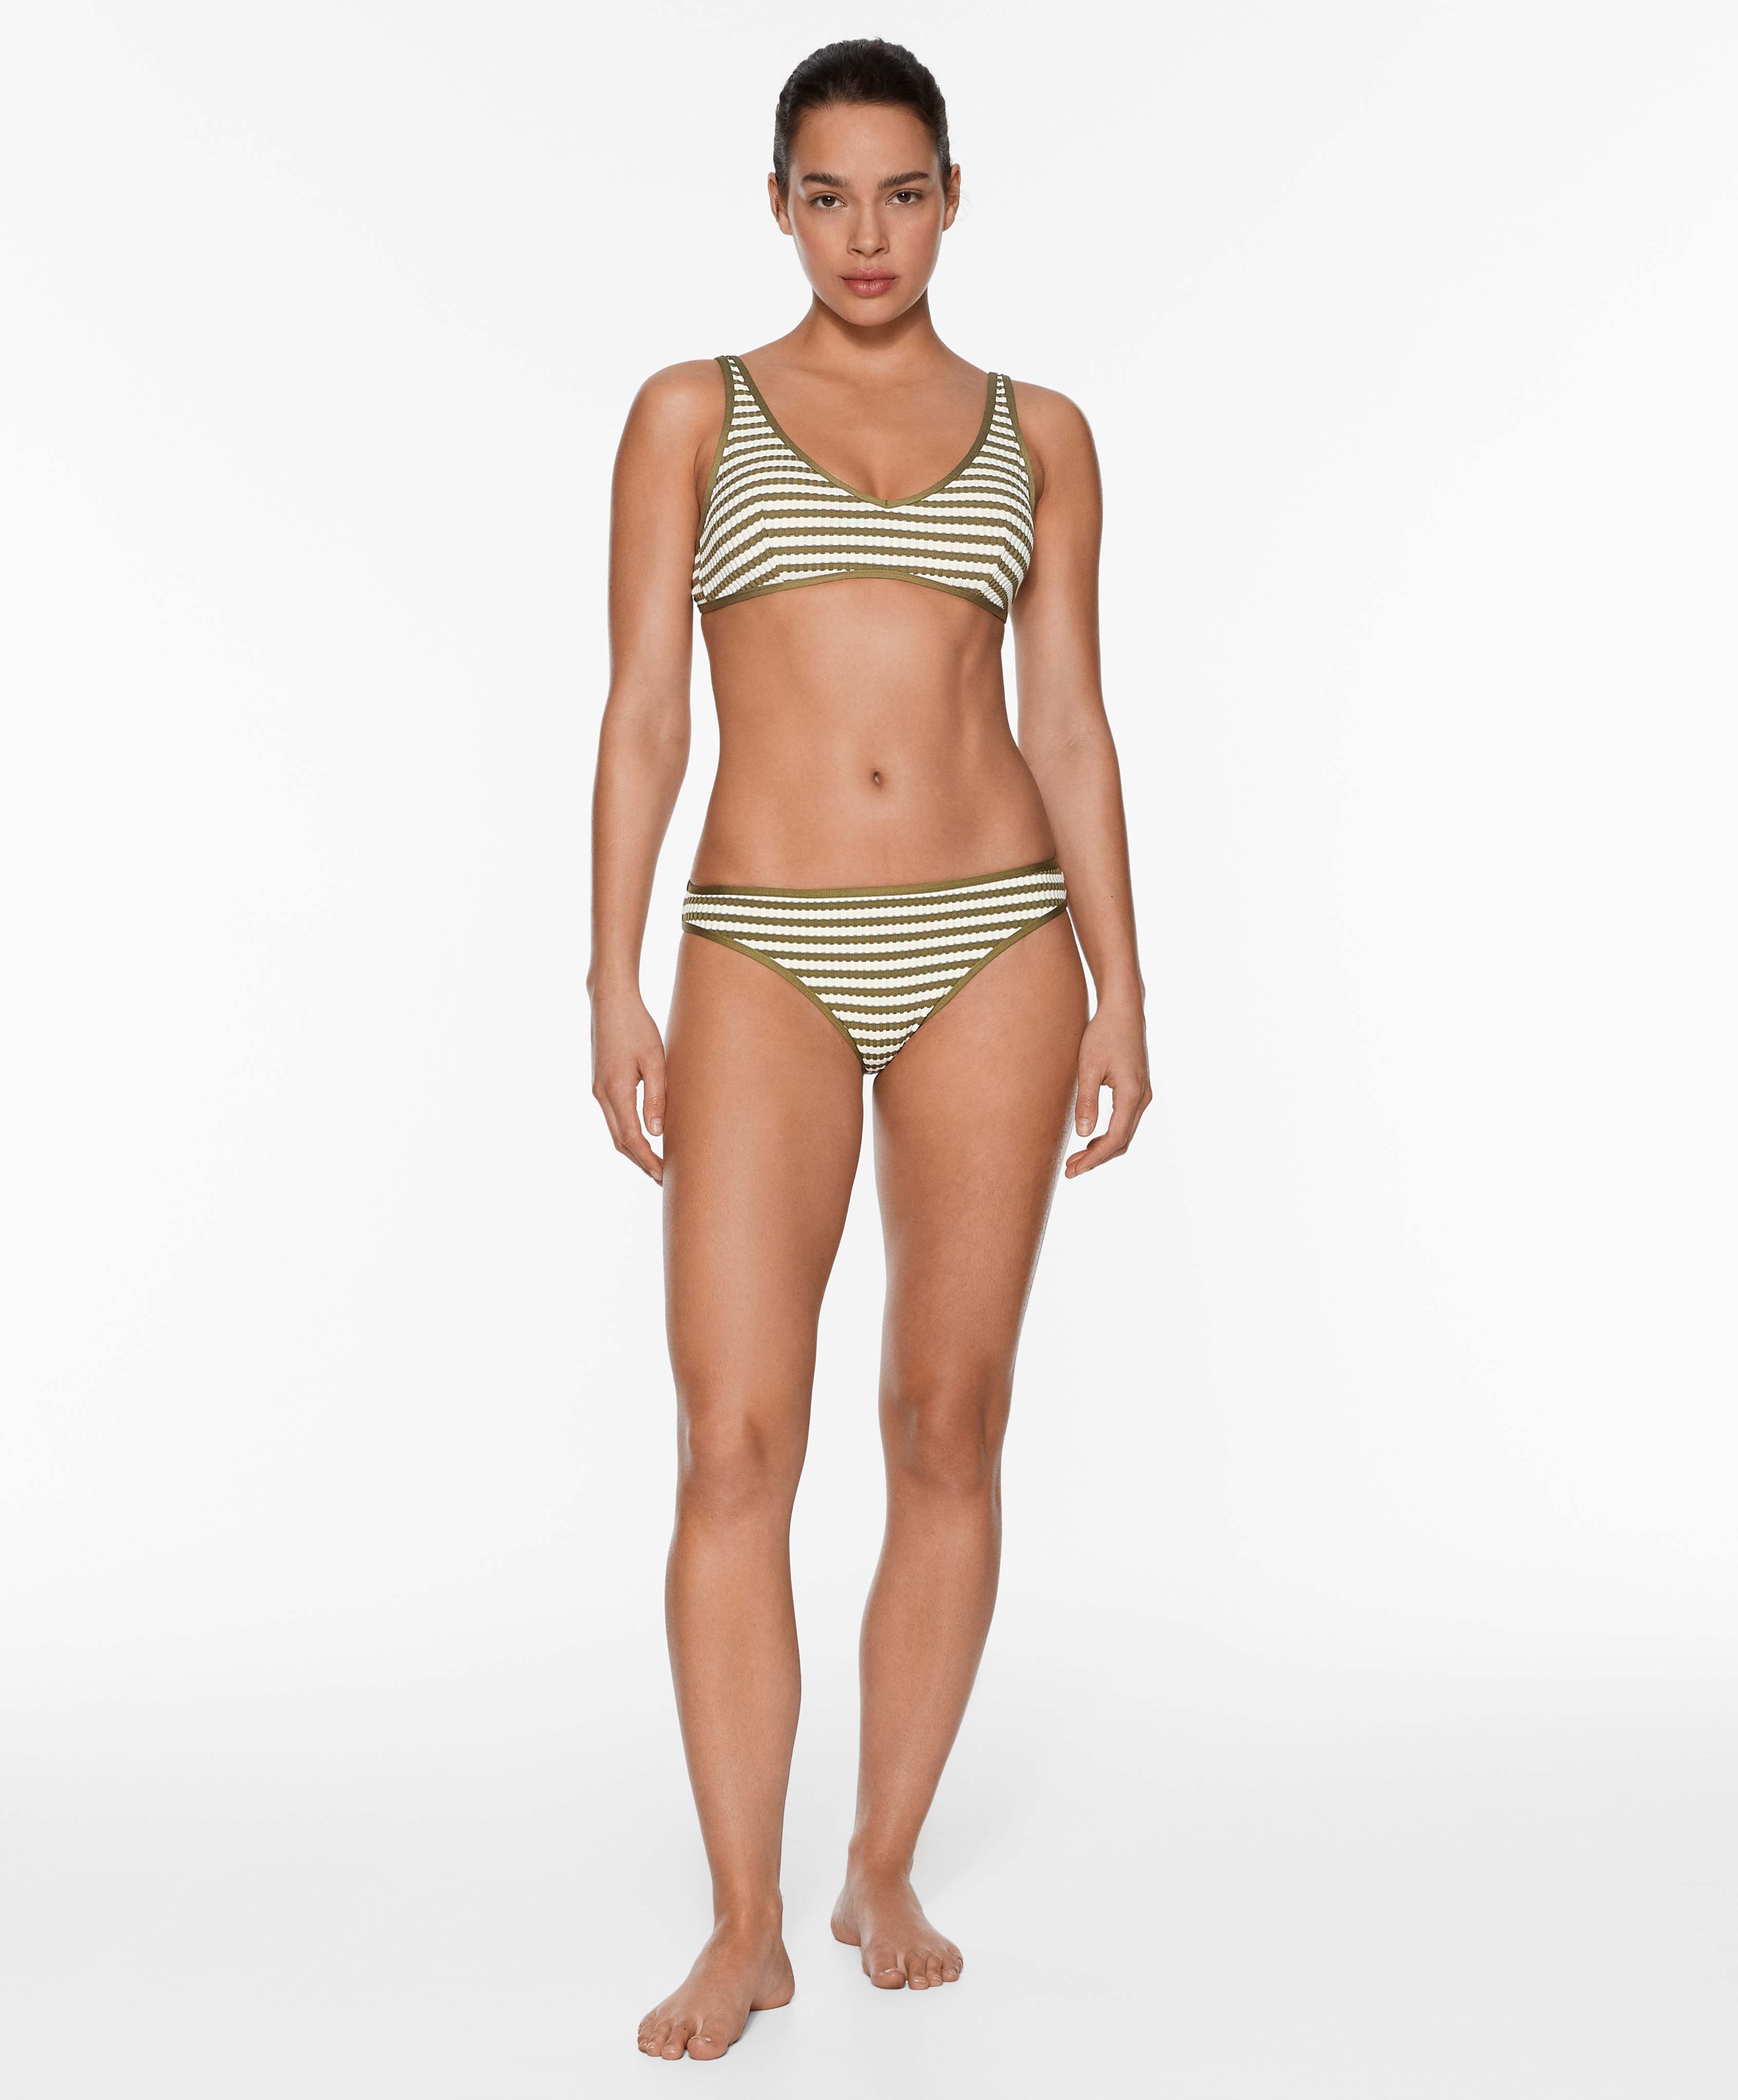 Gracias Oysho, por la nueva modelo de talla media realista de bikinis